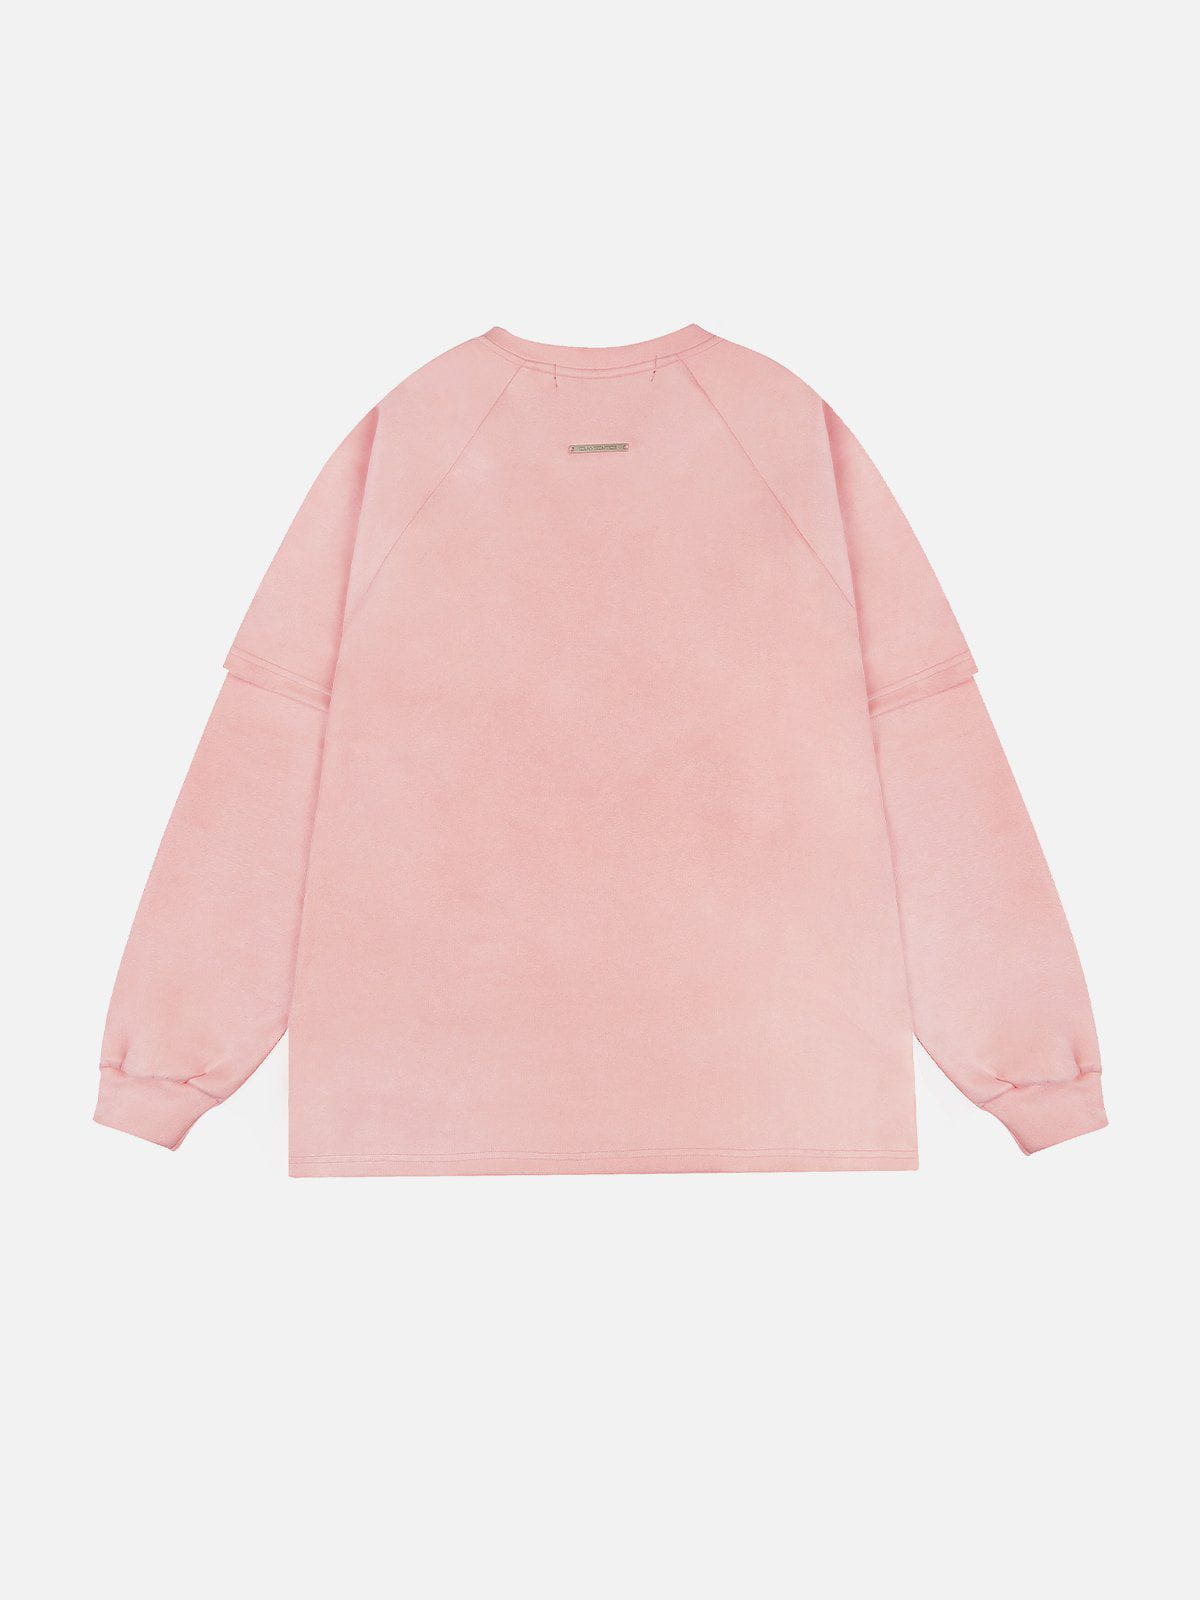 Eprezzy® - Rose Print Suede Sweatshirt Streetwear Fashion - eprezzy.com